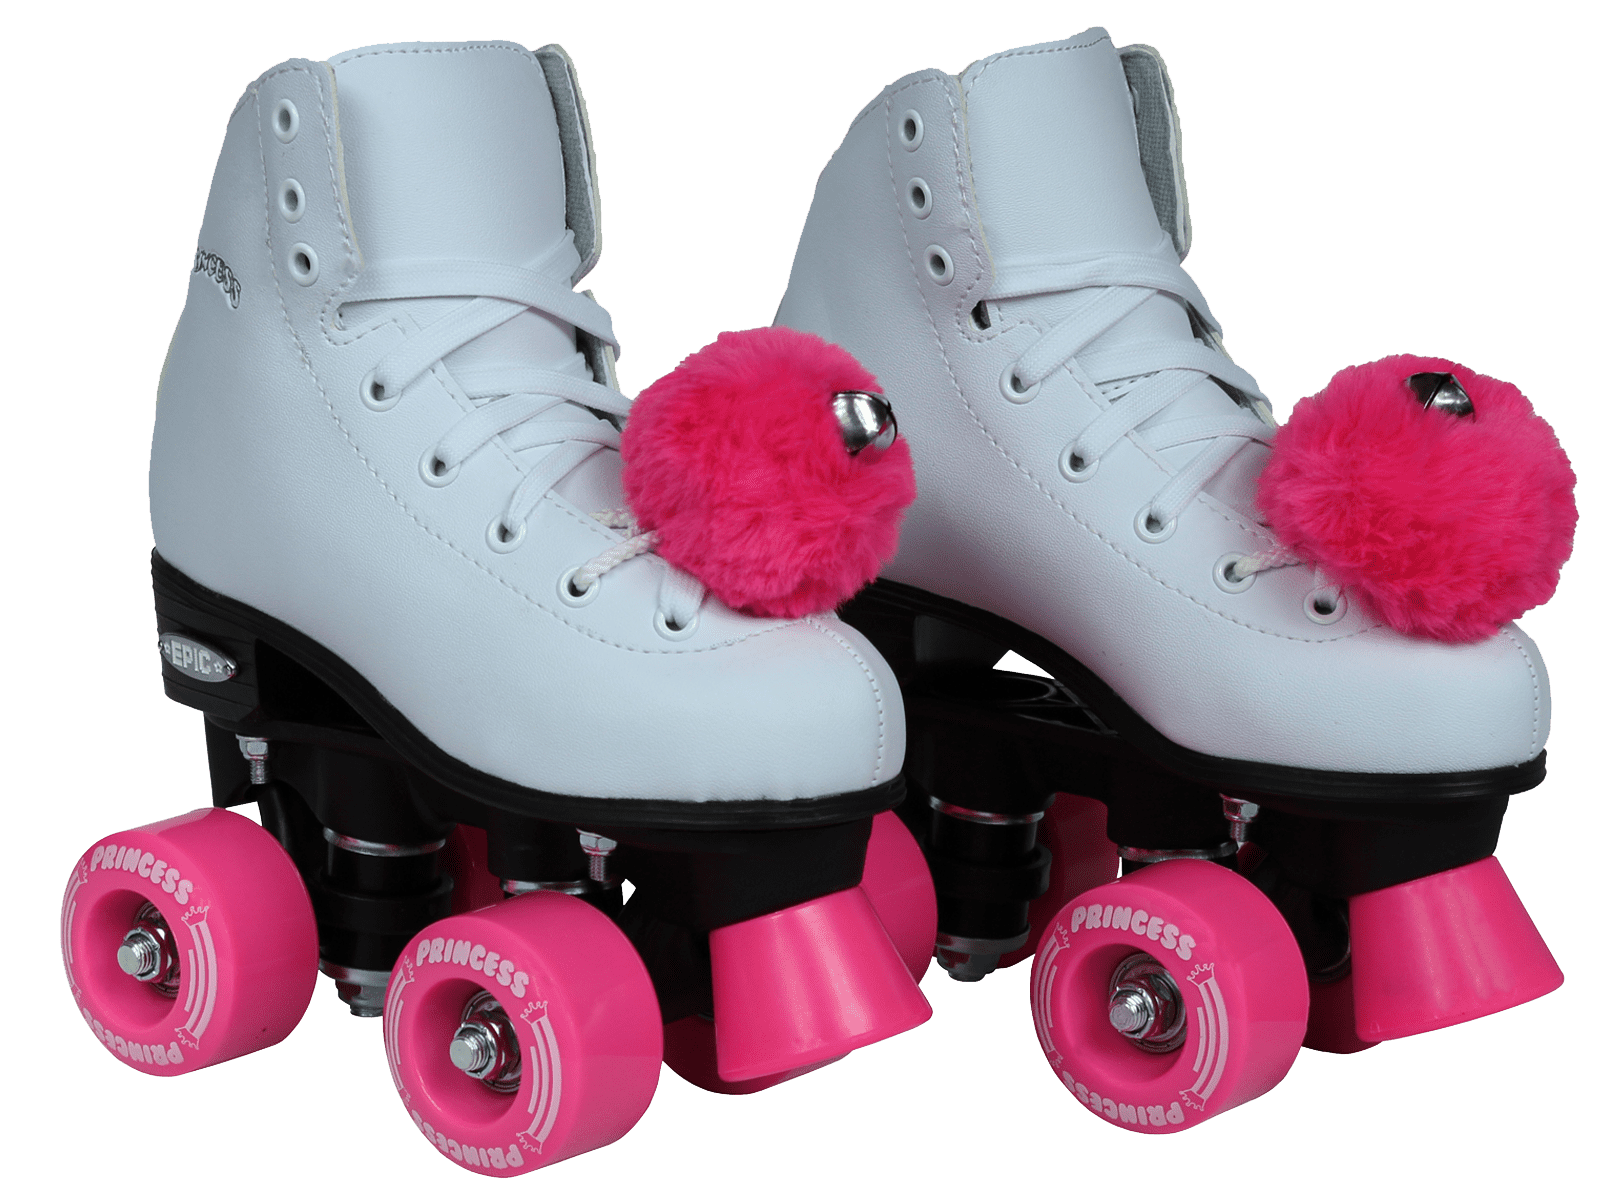 Epic Skates PncsTwl01 Princess Twilight Indoor/Outdoor Quad Roller Skates White/Pink Youth 1 